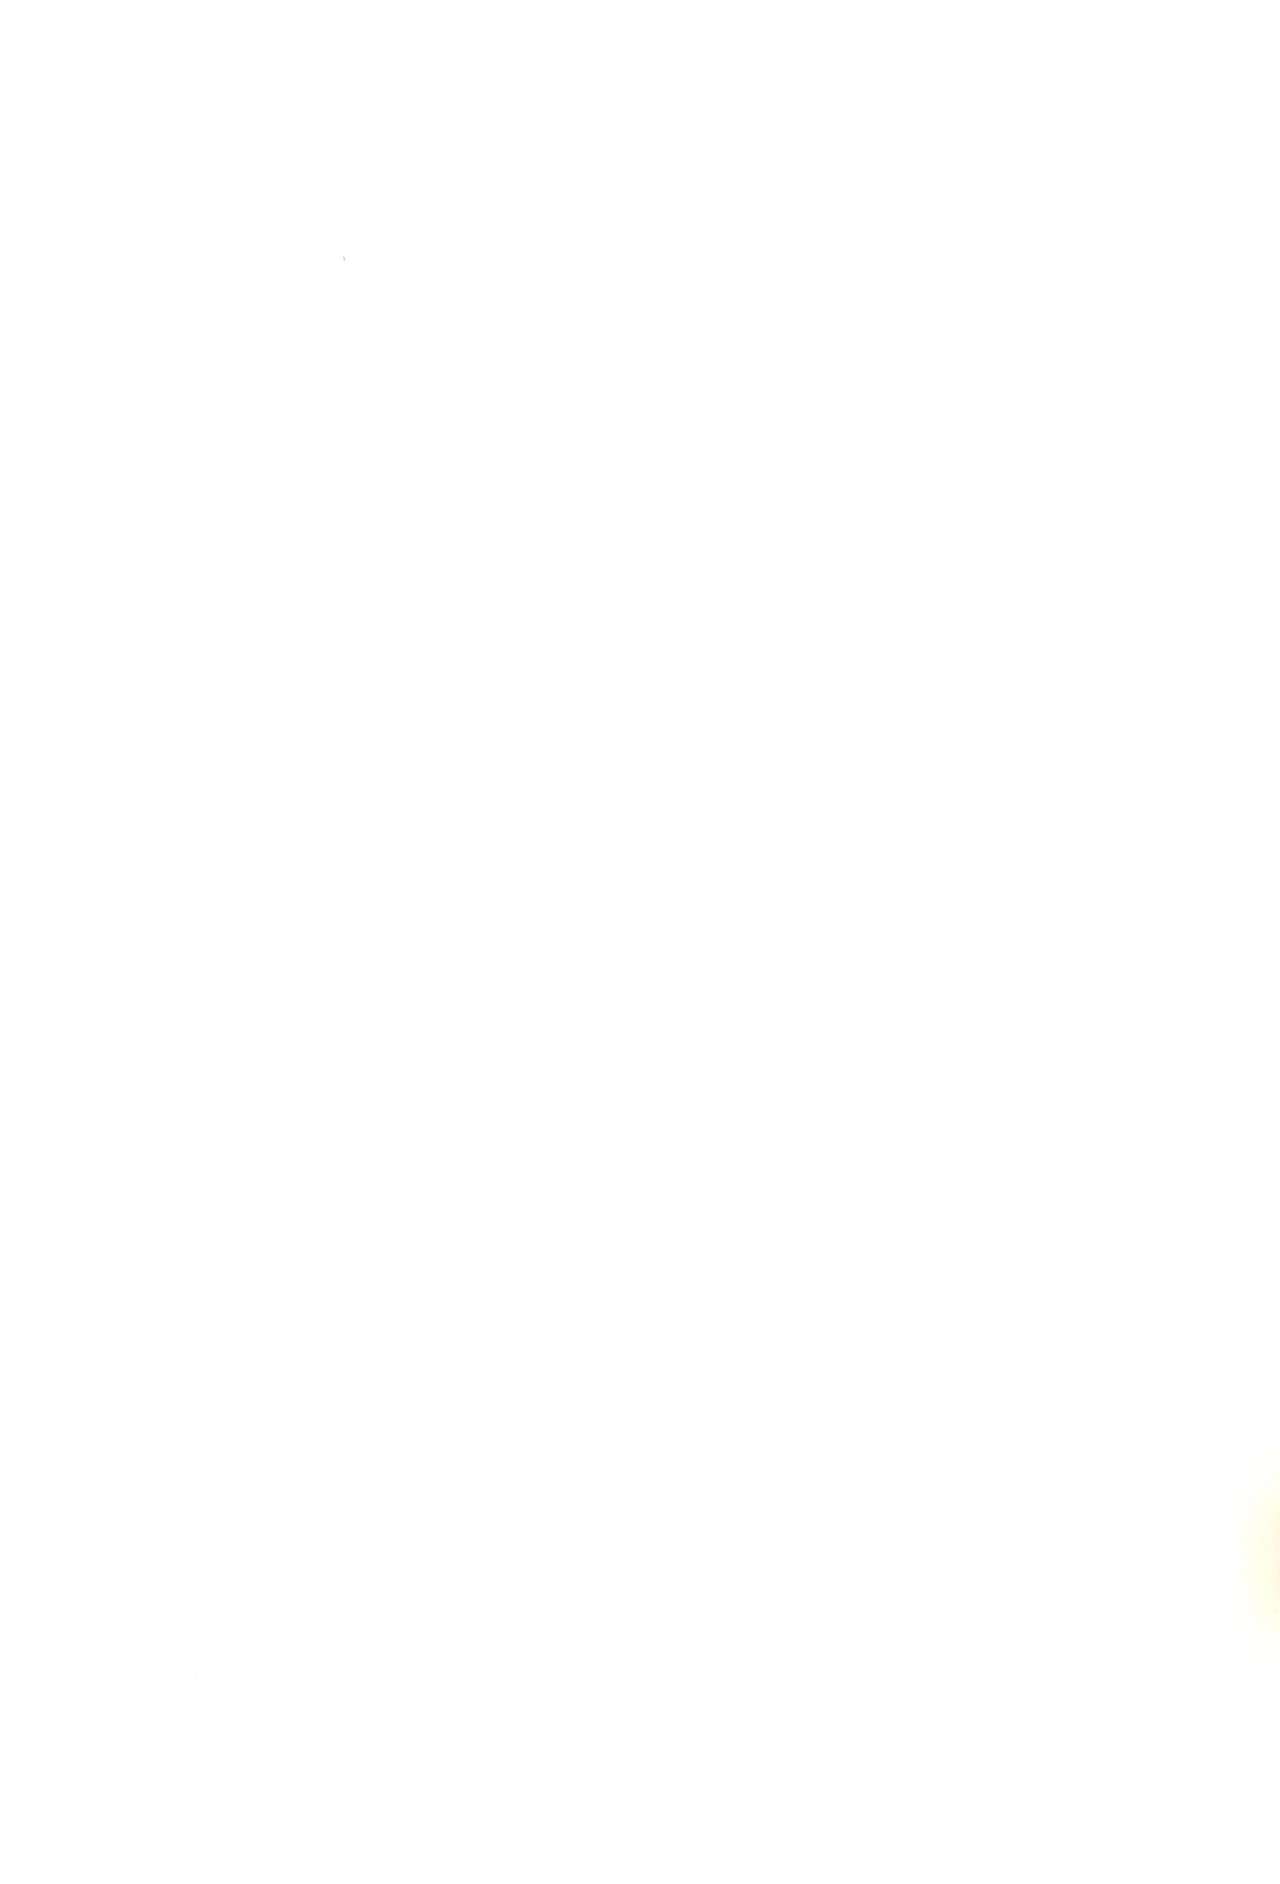 (SHT2010秋) [秒殺狸団 (佐伯達也)] ロリぷりっ☆ペドちぇん! (ひめチェン! おとぎちっくアイドル リルぷりっ)